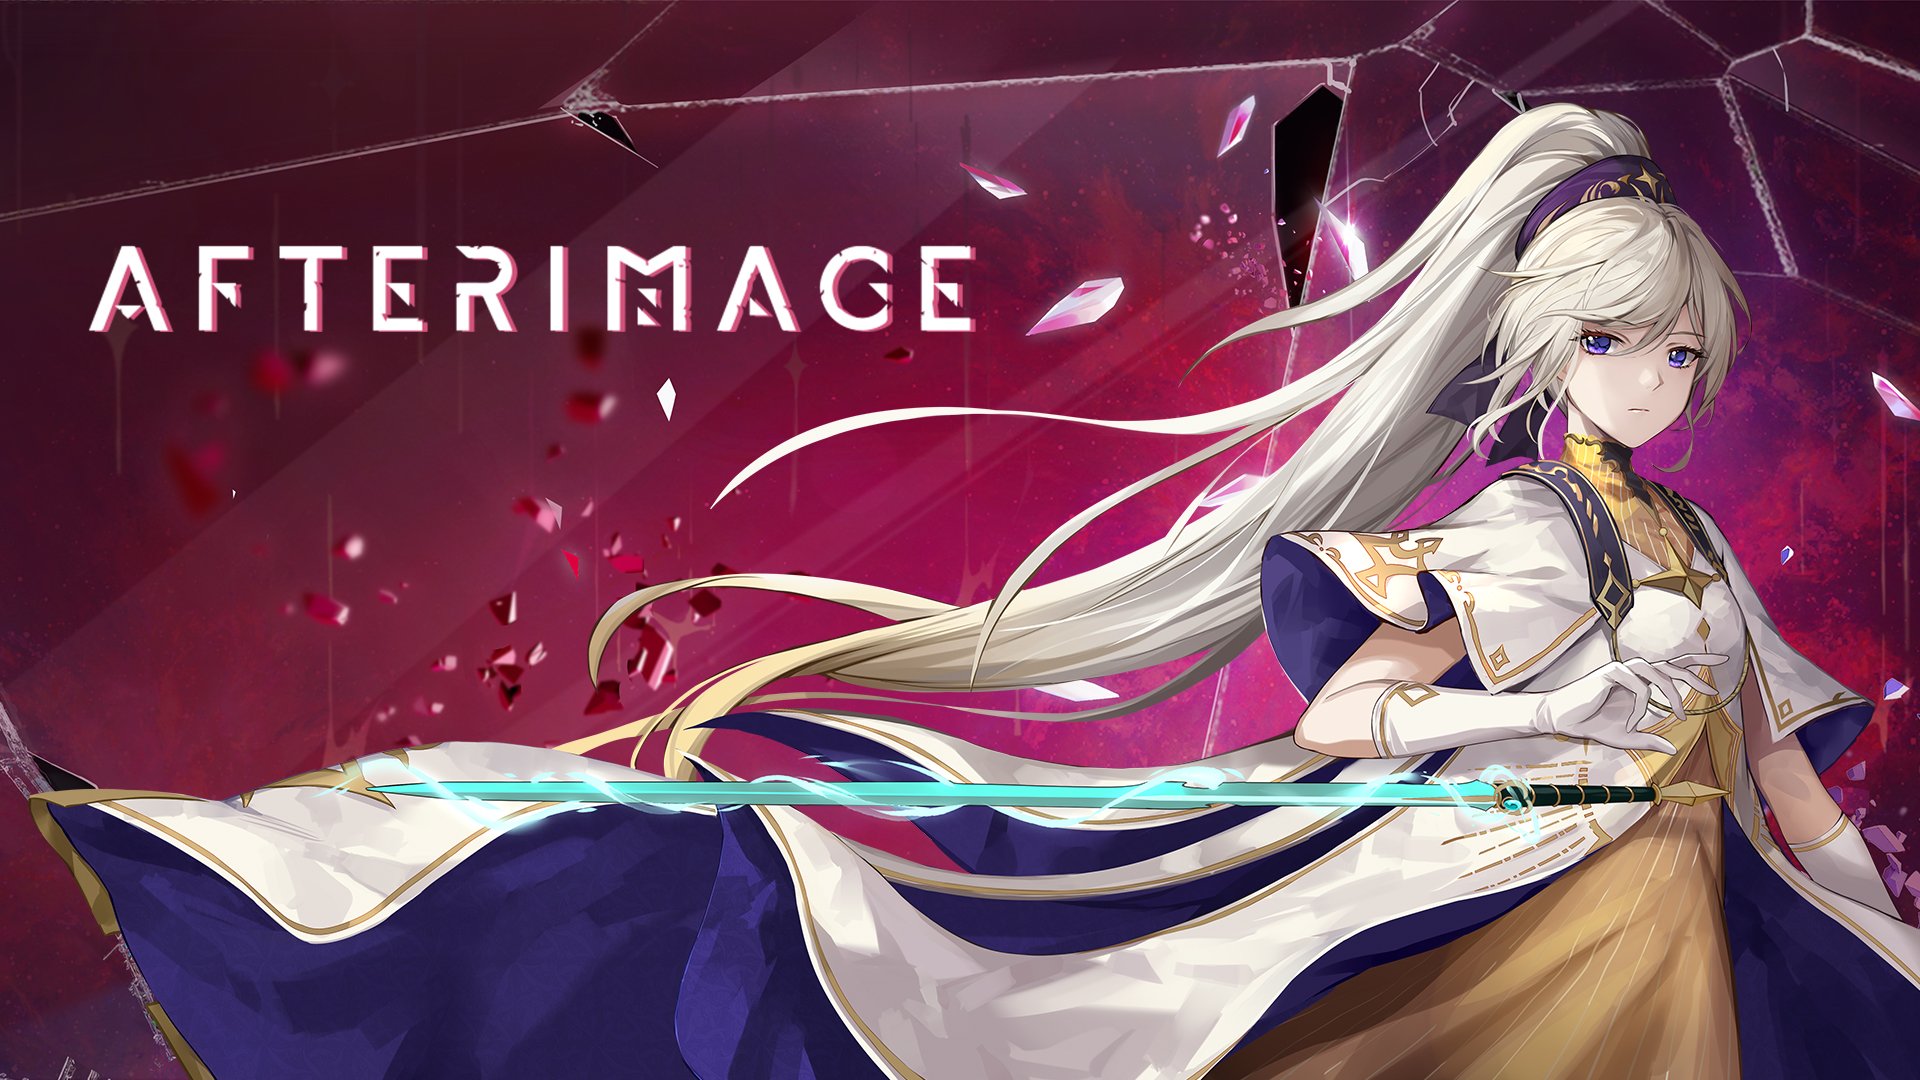 Afterimage bude spuštěn 25. dubna 2023